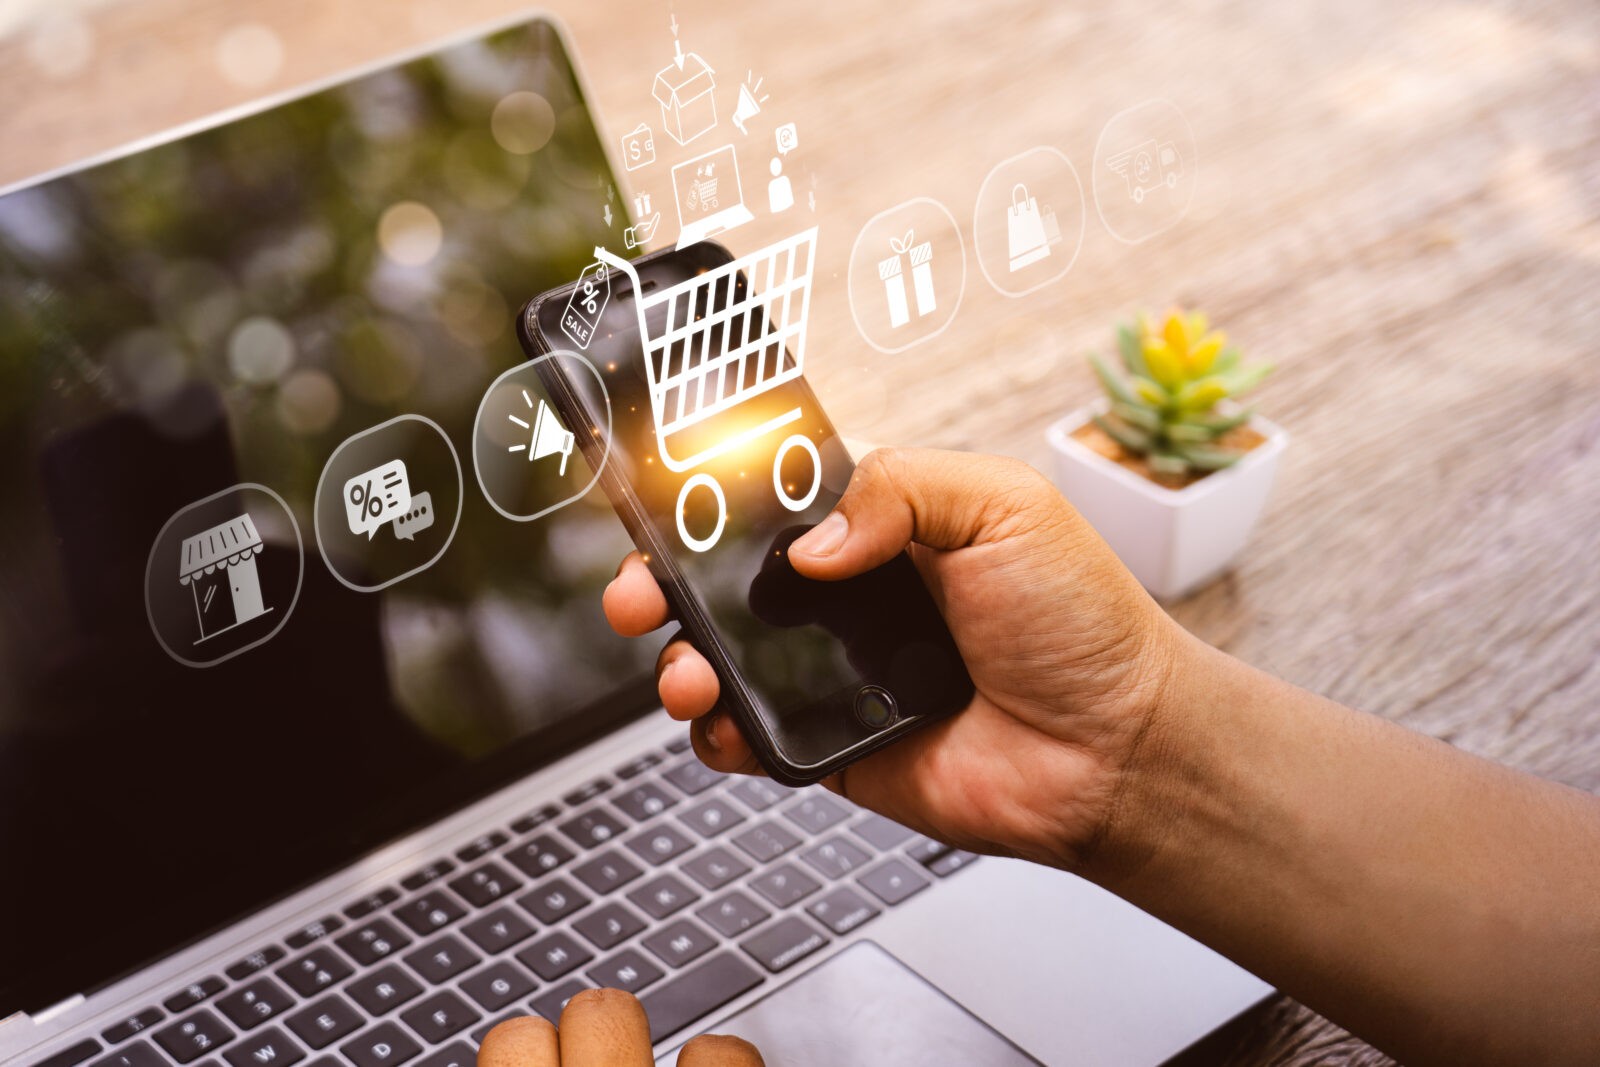 Symbolbild E-Commerce: Laptop und Smartphone in einer Hand mit Einkaufssymbolik